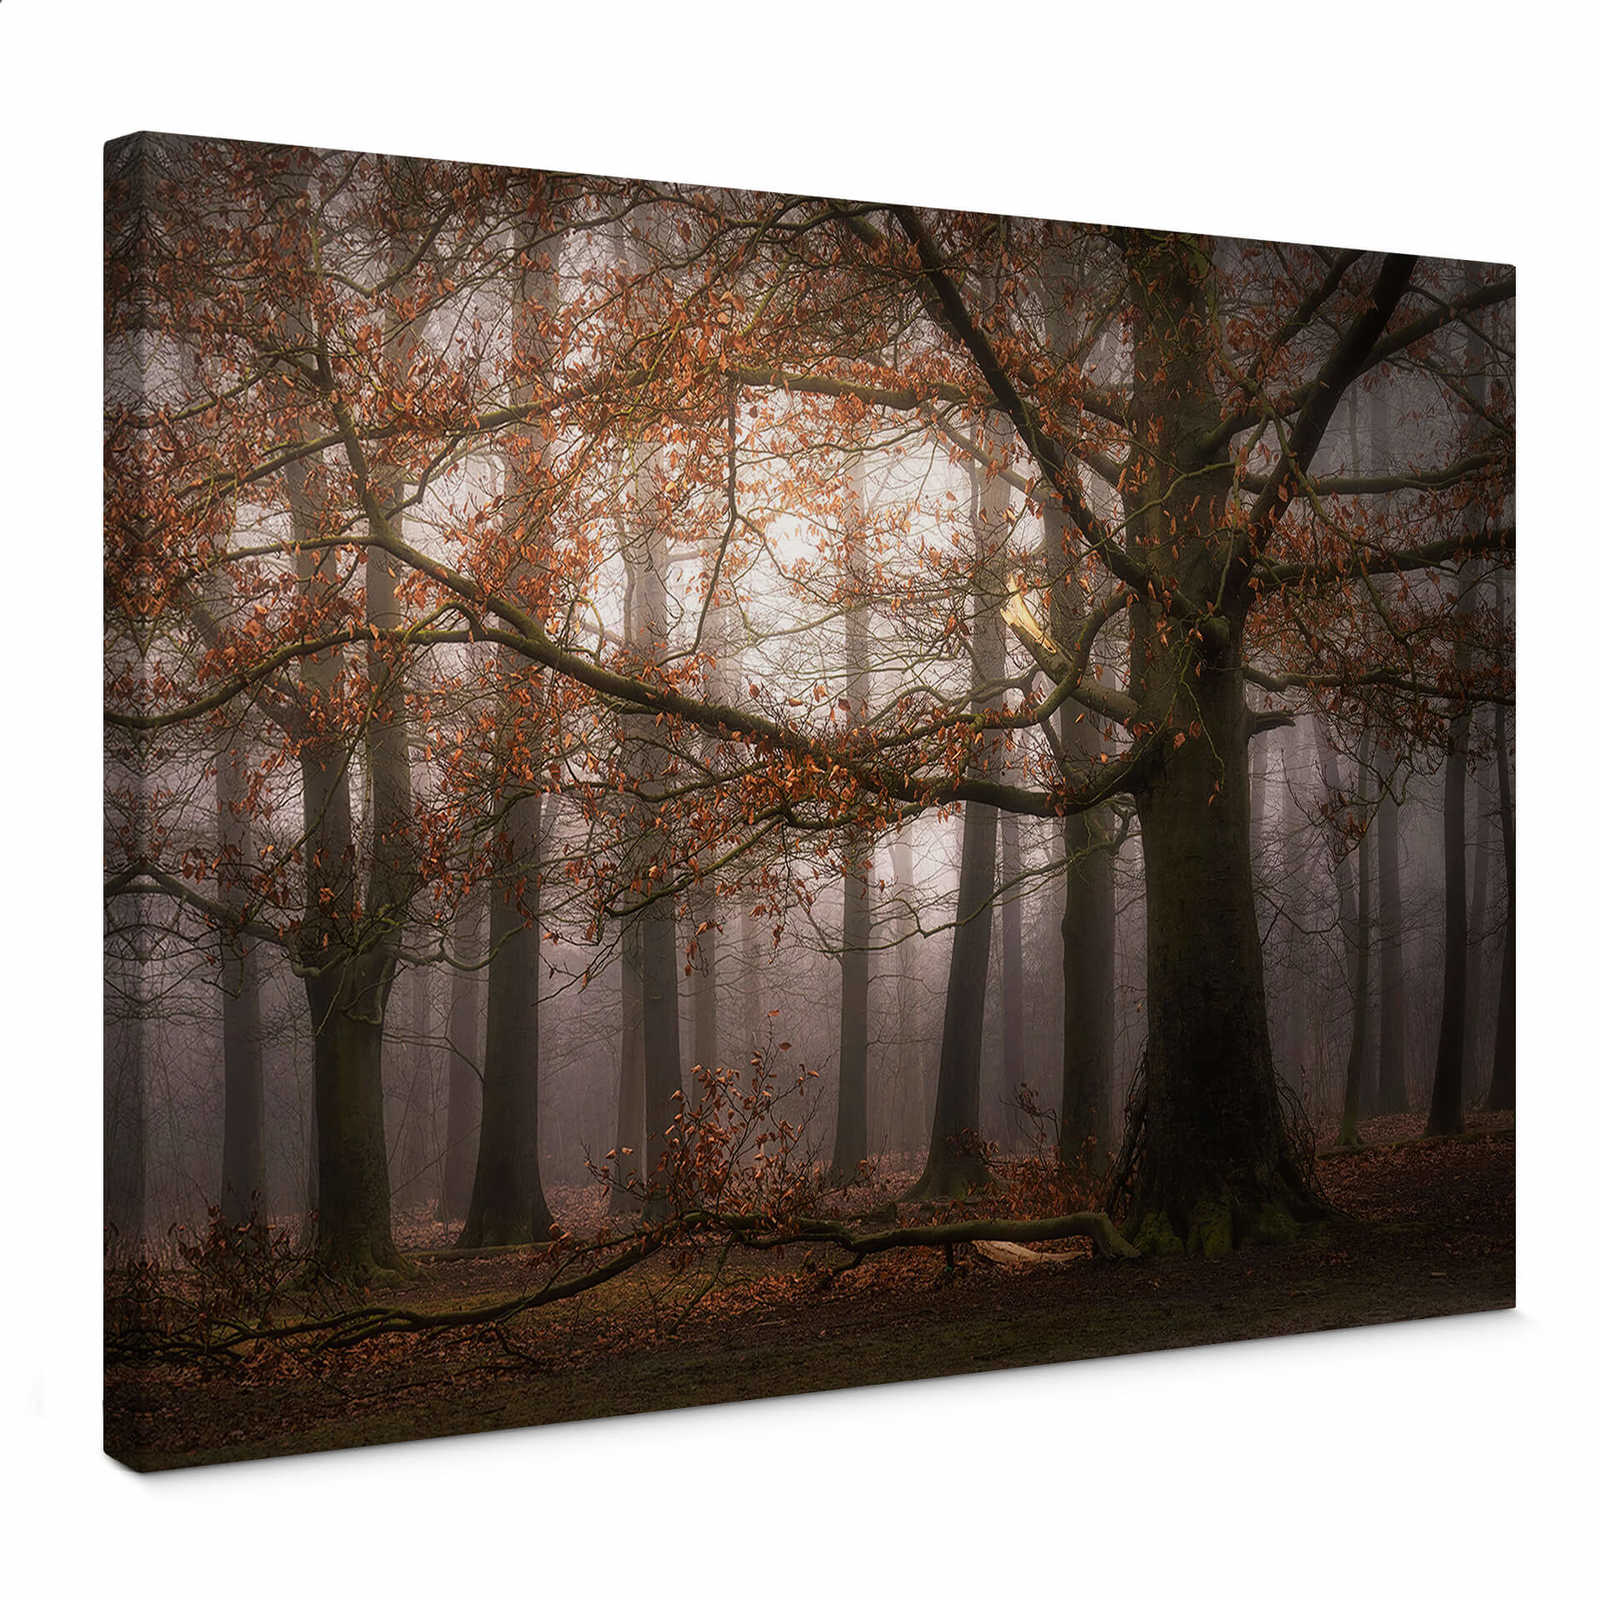 Tableau sur toile avec forêt de feuilles en novembre de Digemans - 0,70 m x 0,50 m
